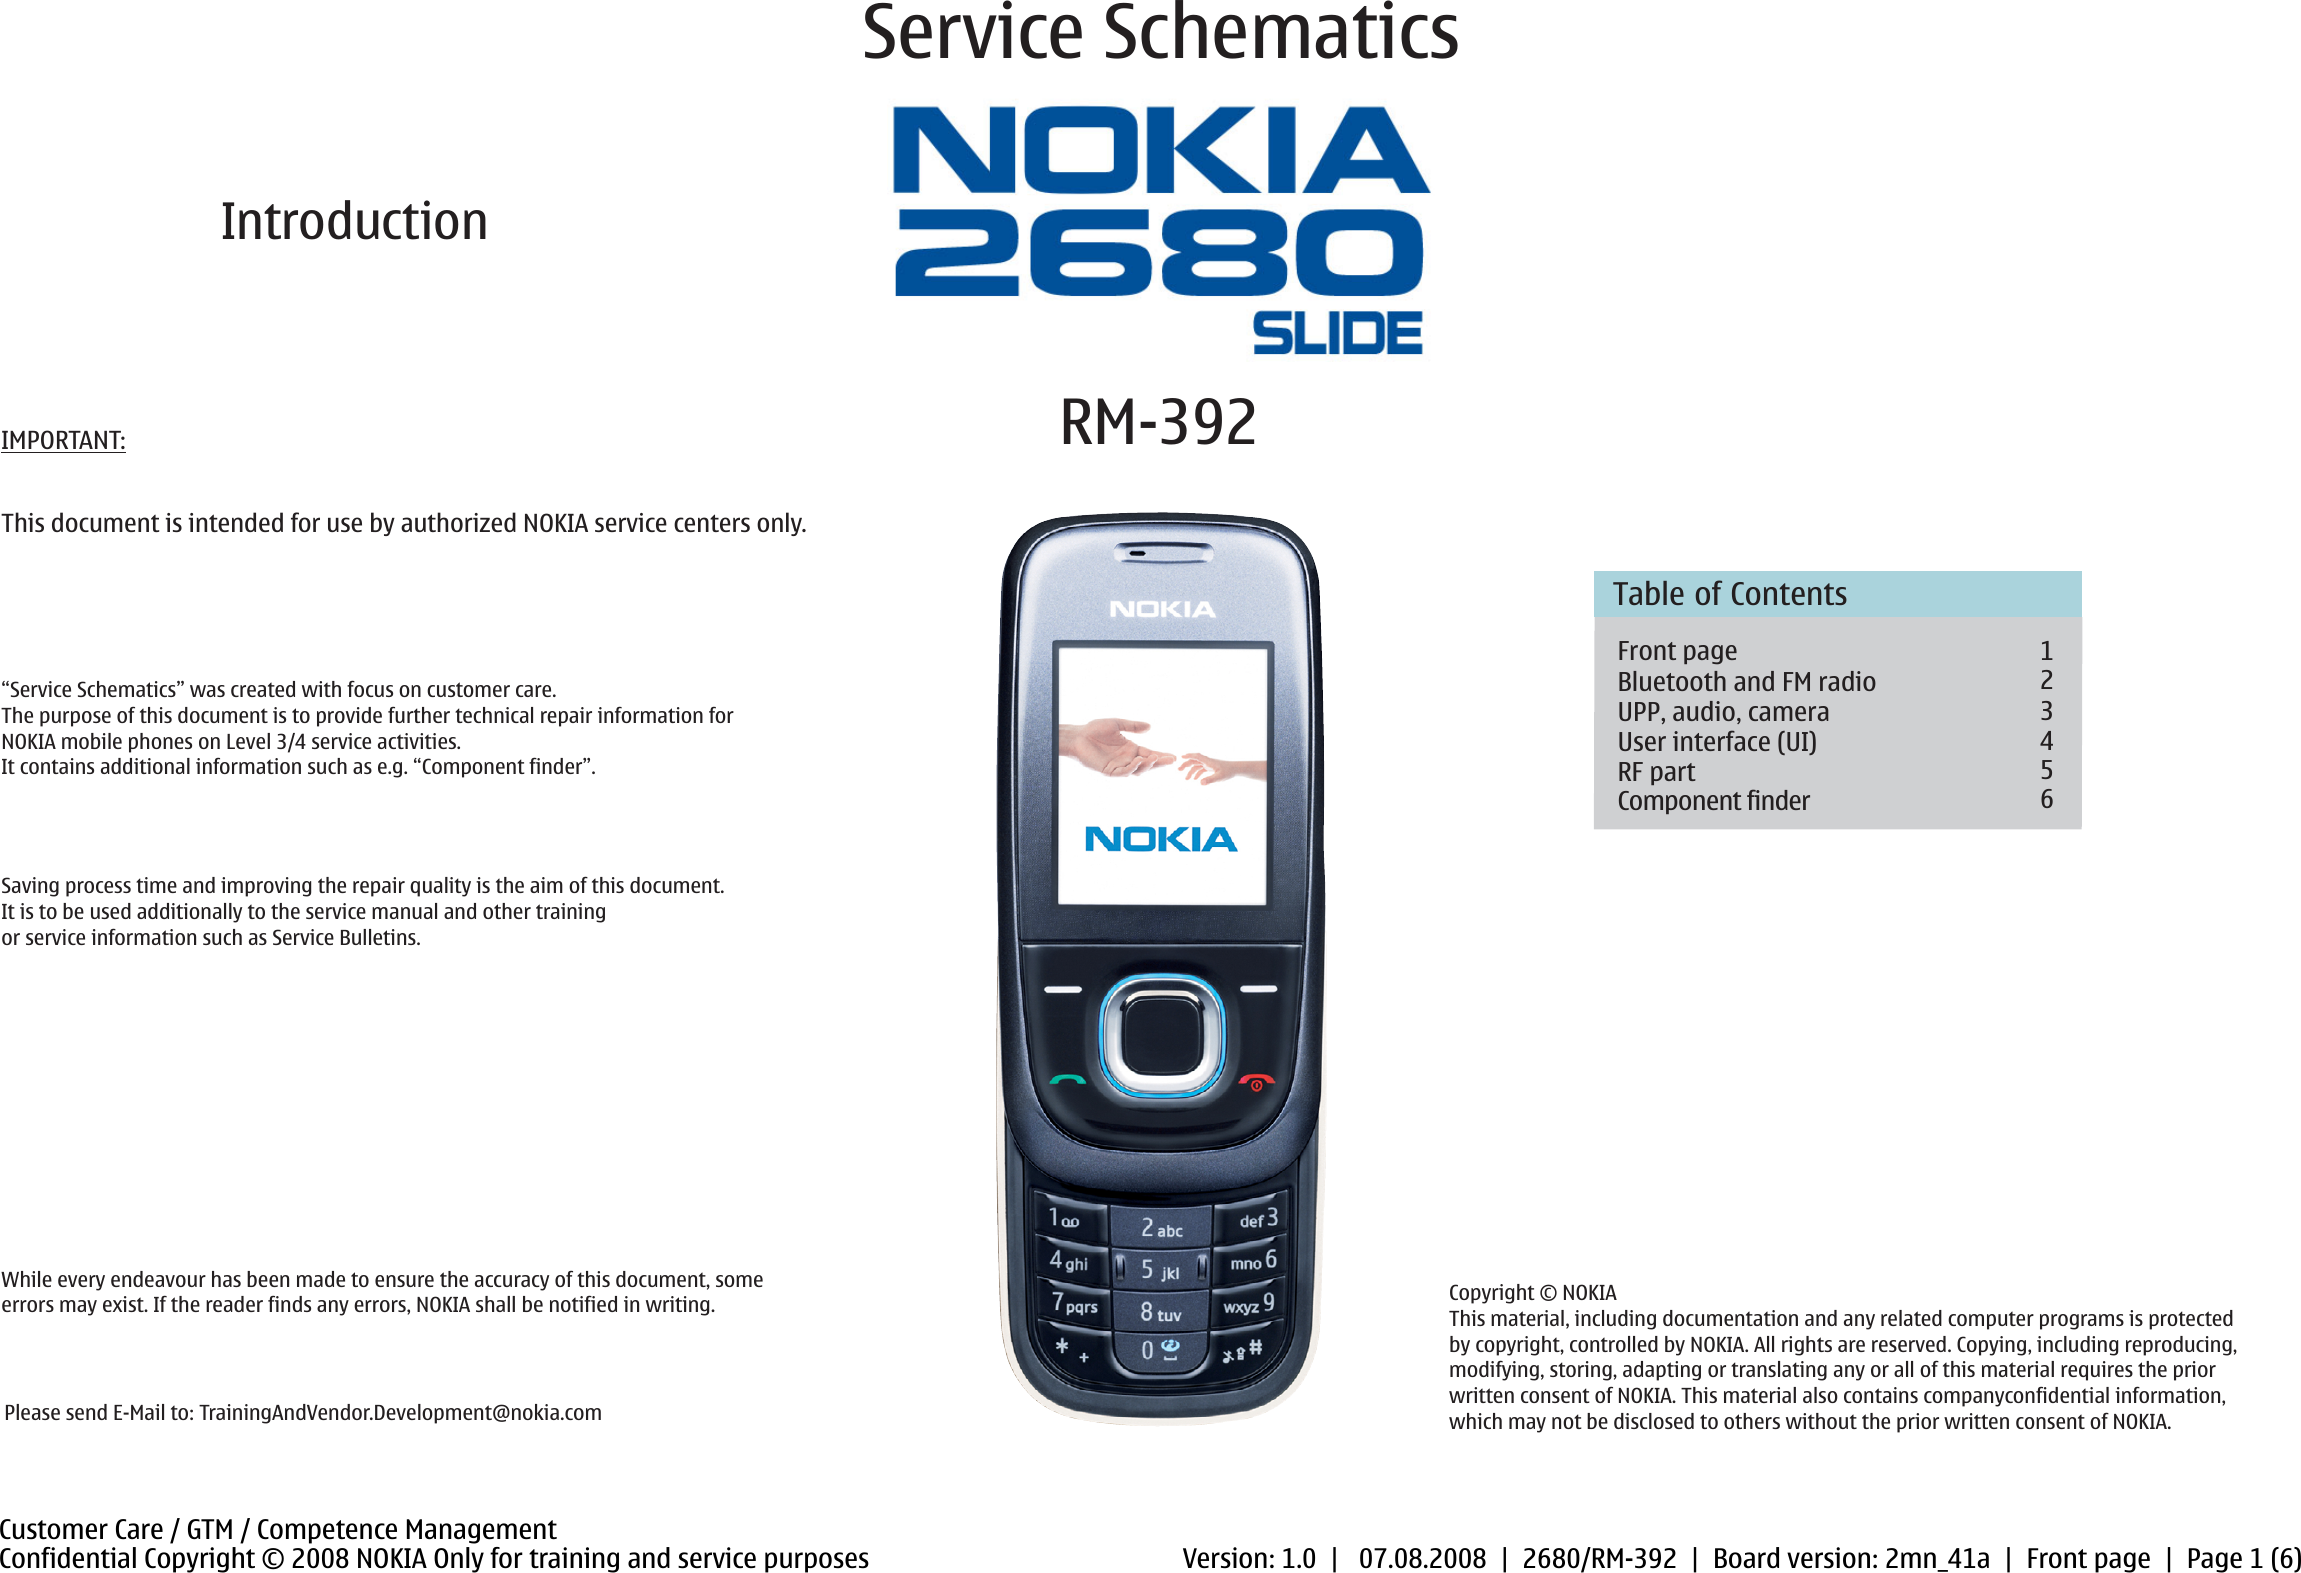 Телефоны нокиа инструкция. Нокиа 2680 слайдер. Телефон Nokia 2680 Slide. Телефон нокия кнопочный инструкция по применению. Нокиа 2680 слайдер характеристики.